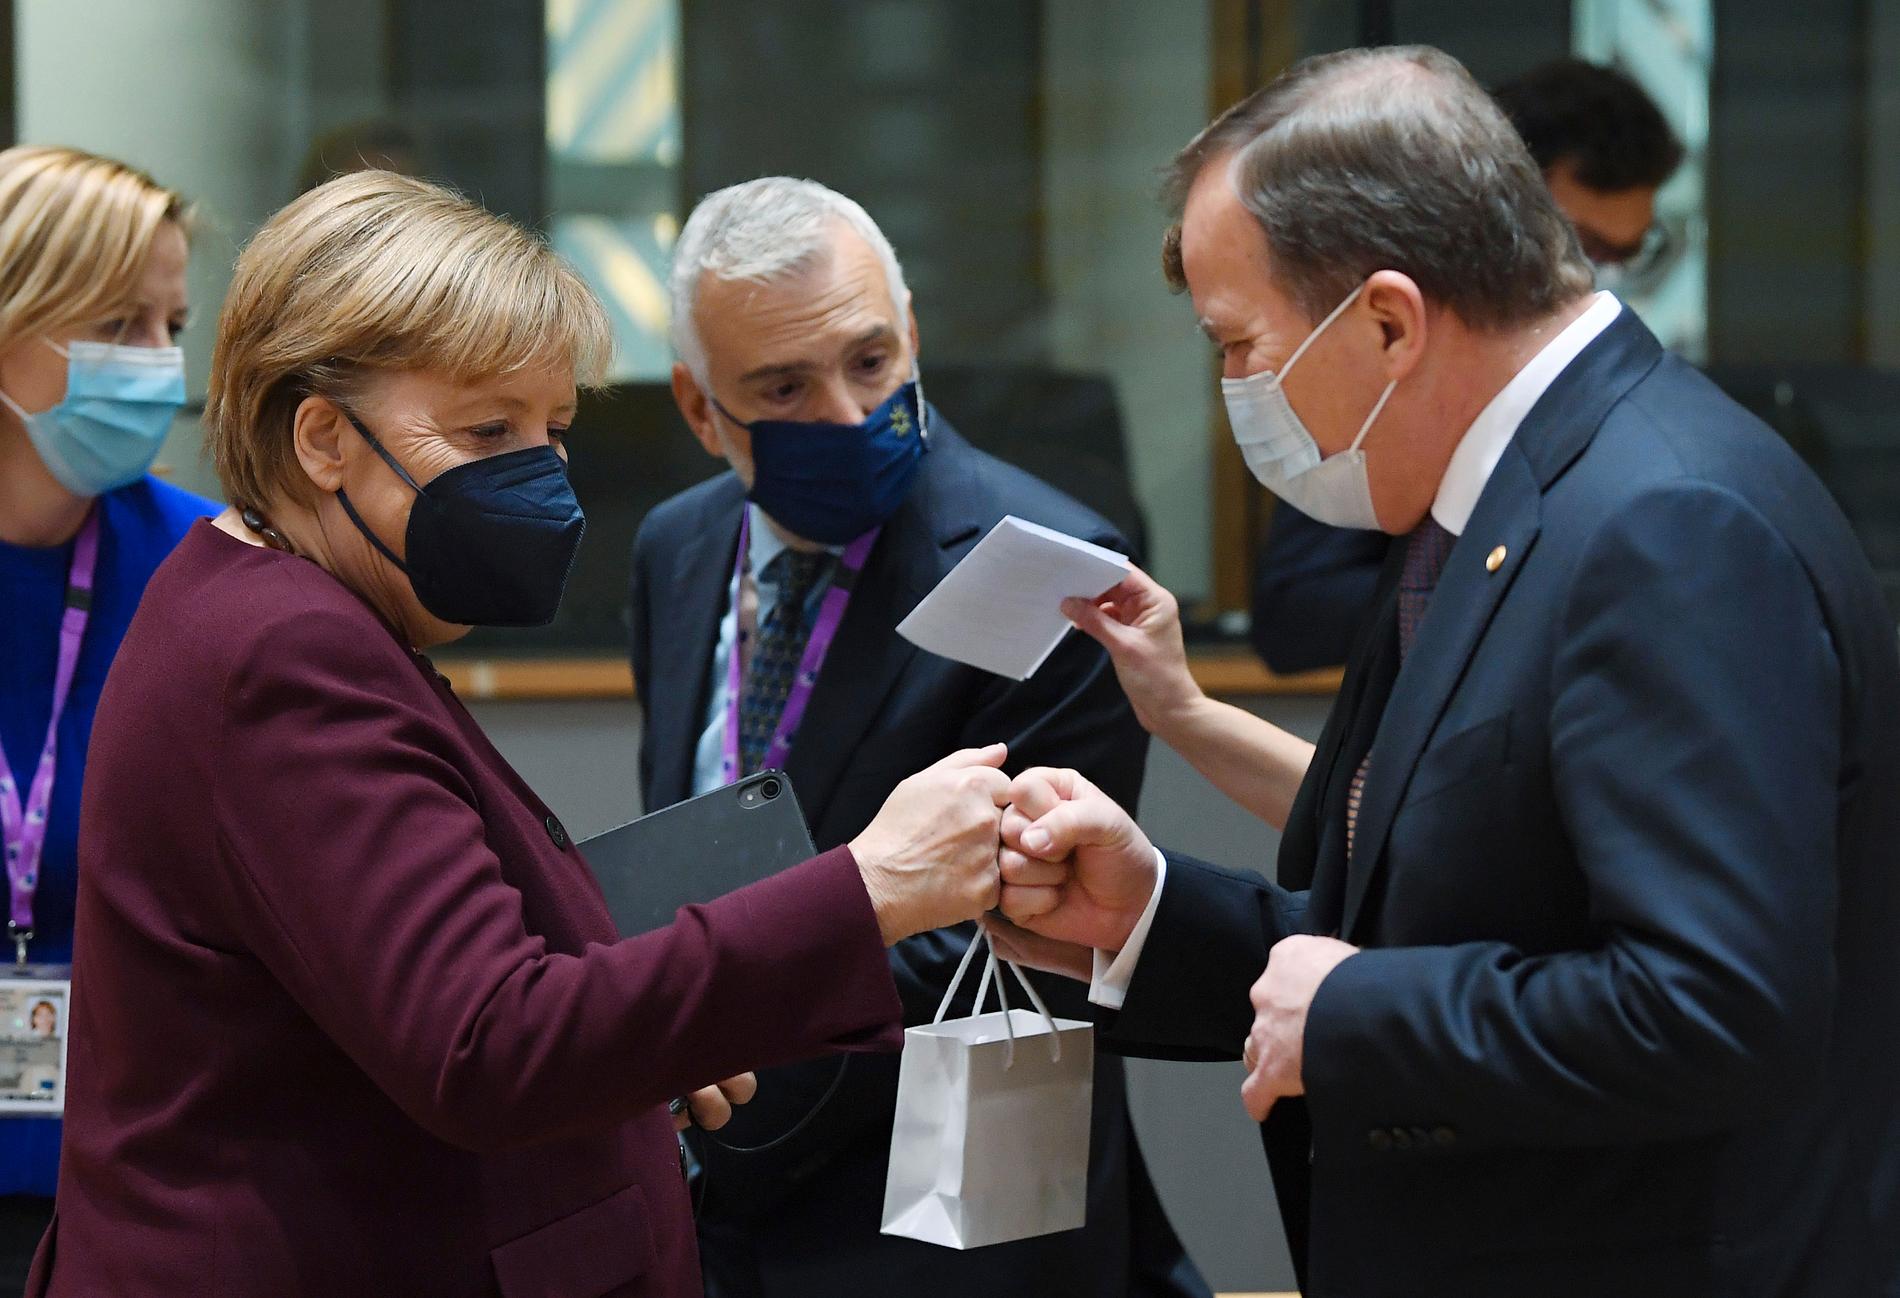 Presentutdelning pågår när Tysklands förbundskansler Angela Merkel och Sveriges statsminister Stefan Löfven träffas i Bryssel. Båda antas nu göra sitt sista EU-toppmöte.